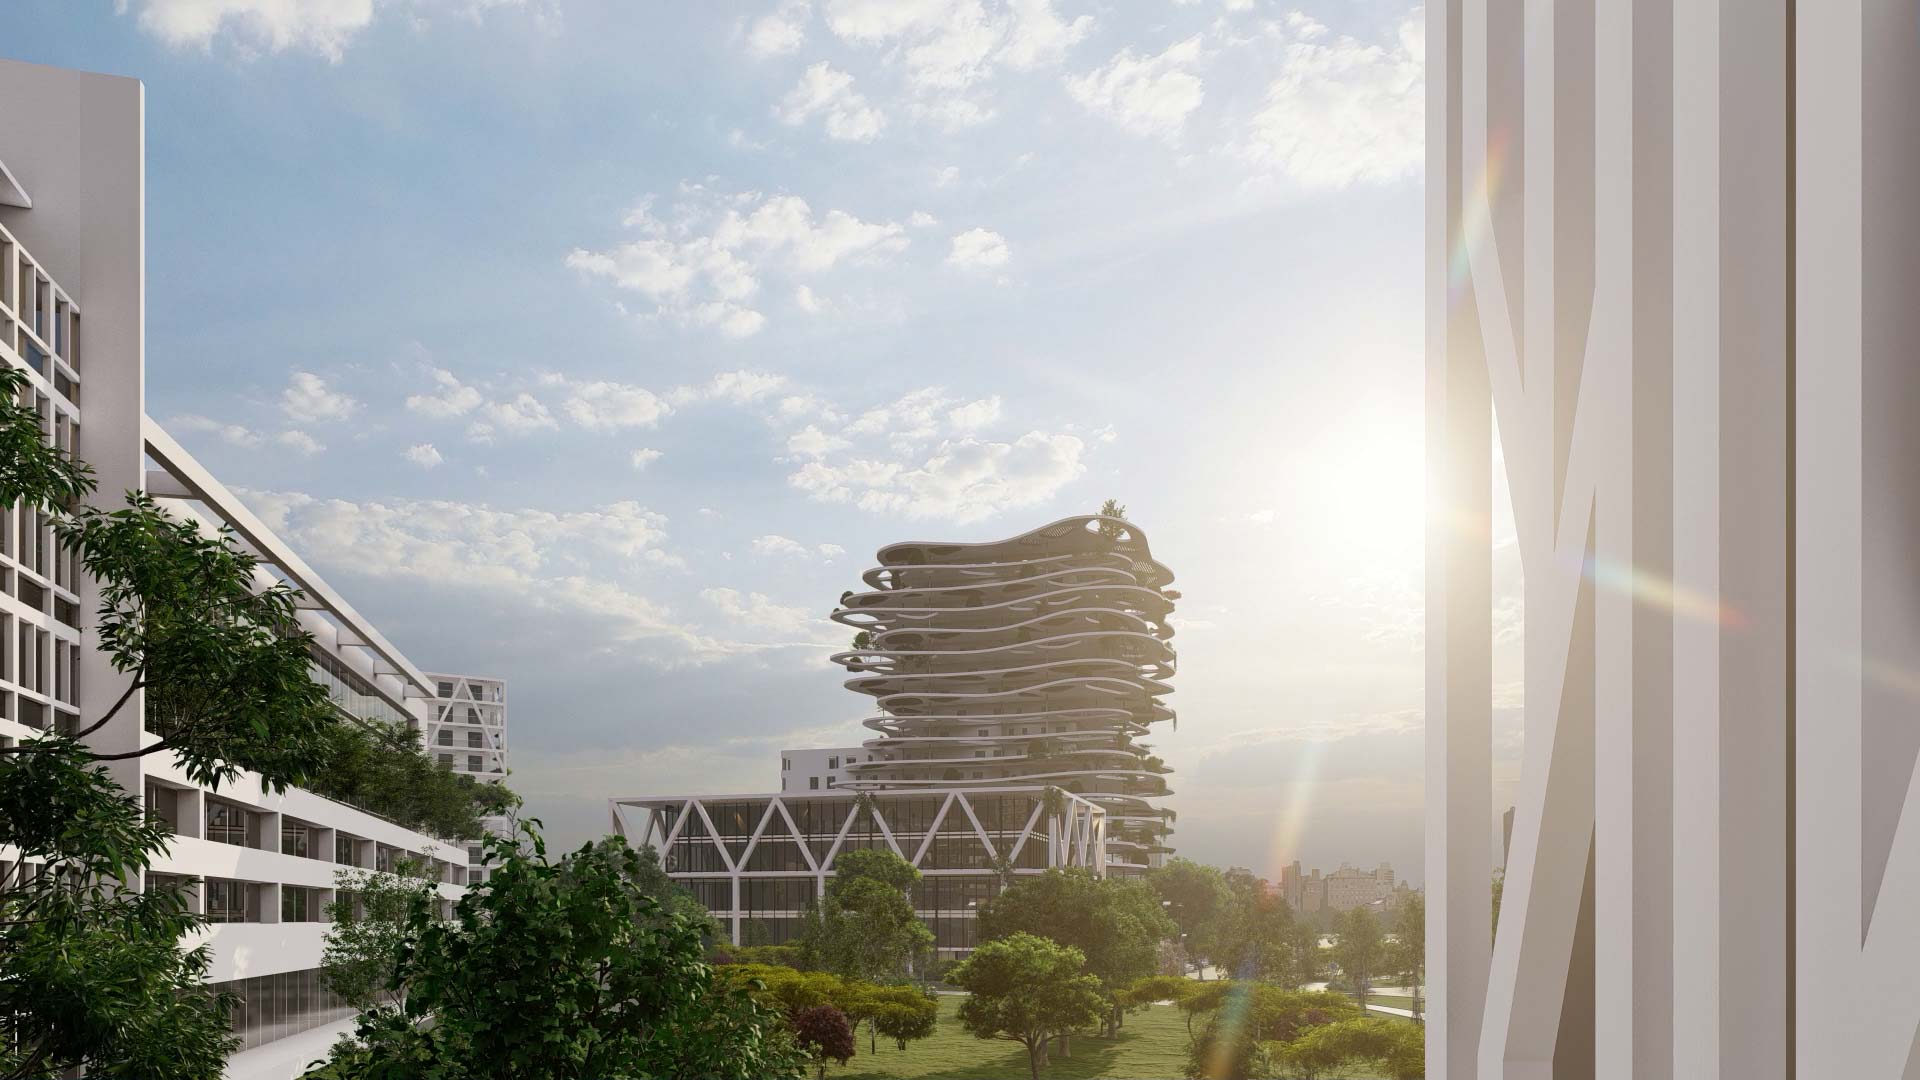 Architectes-Collectivites-projet-aménagement-urbain-perspective-3D-immeuble-ciel-soleil